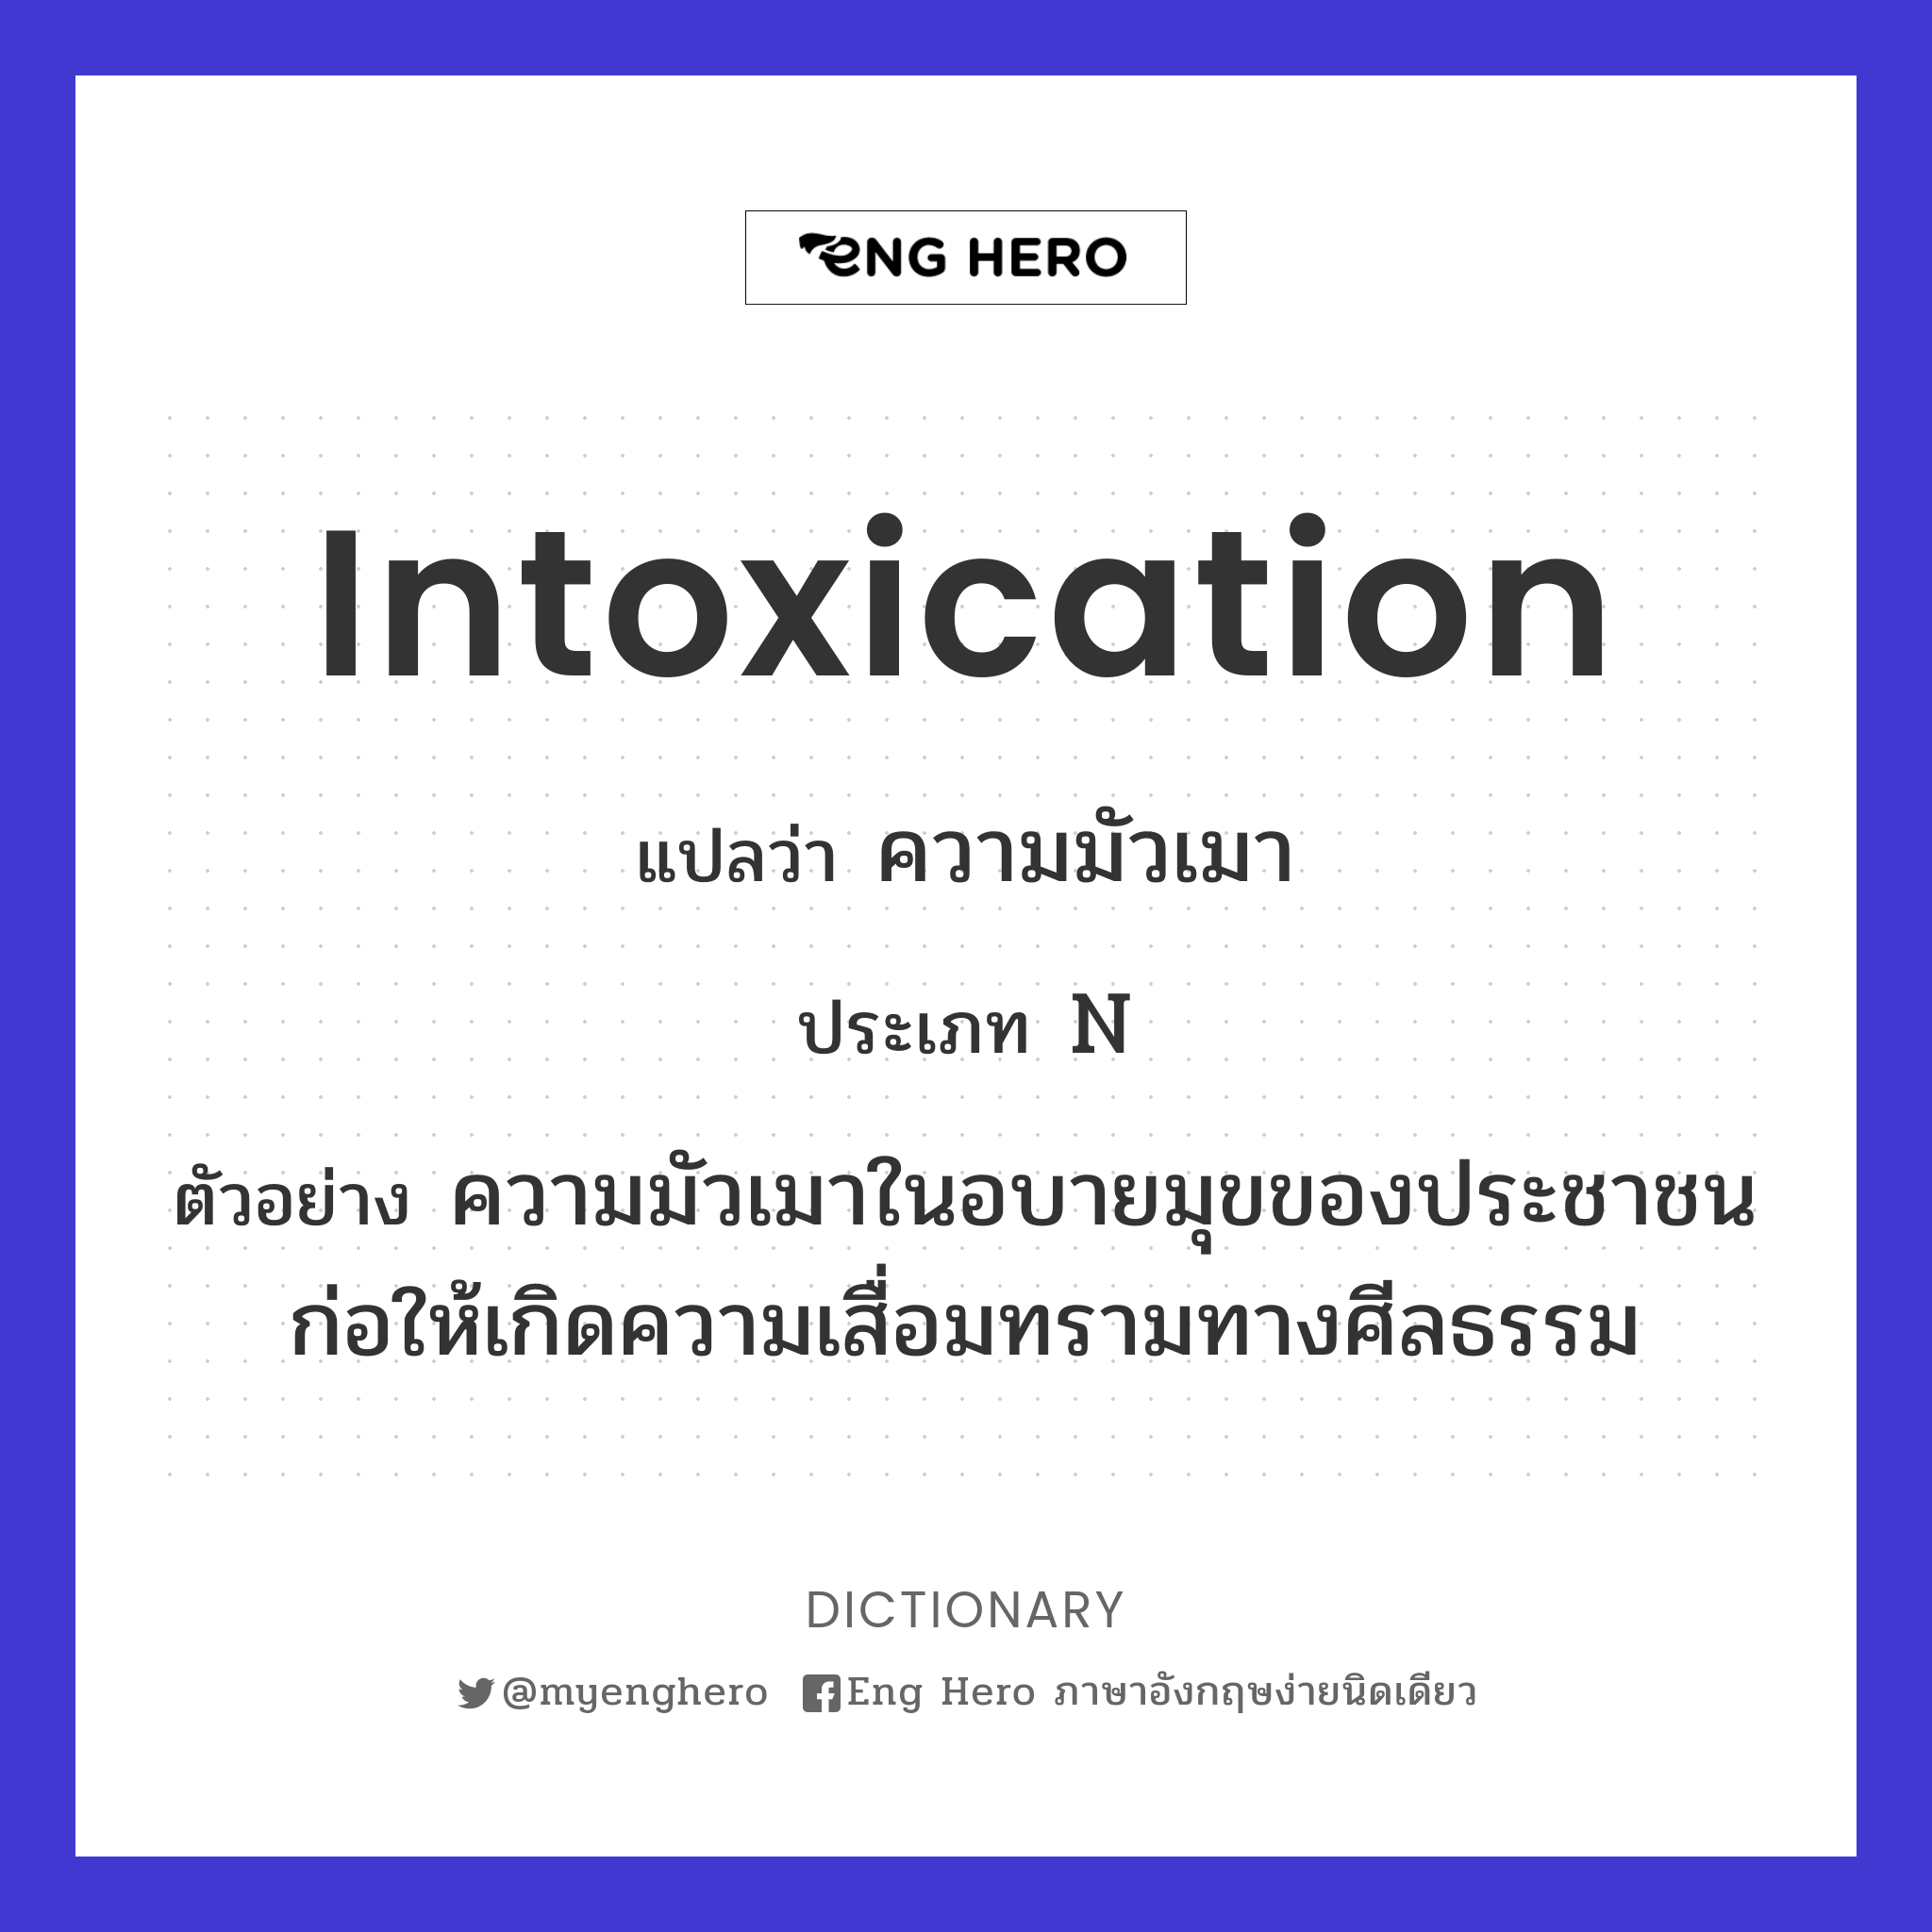 intoxication